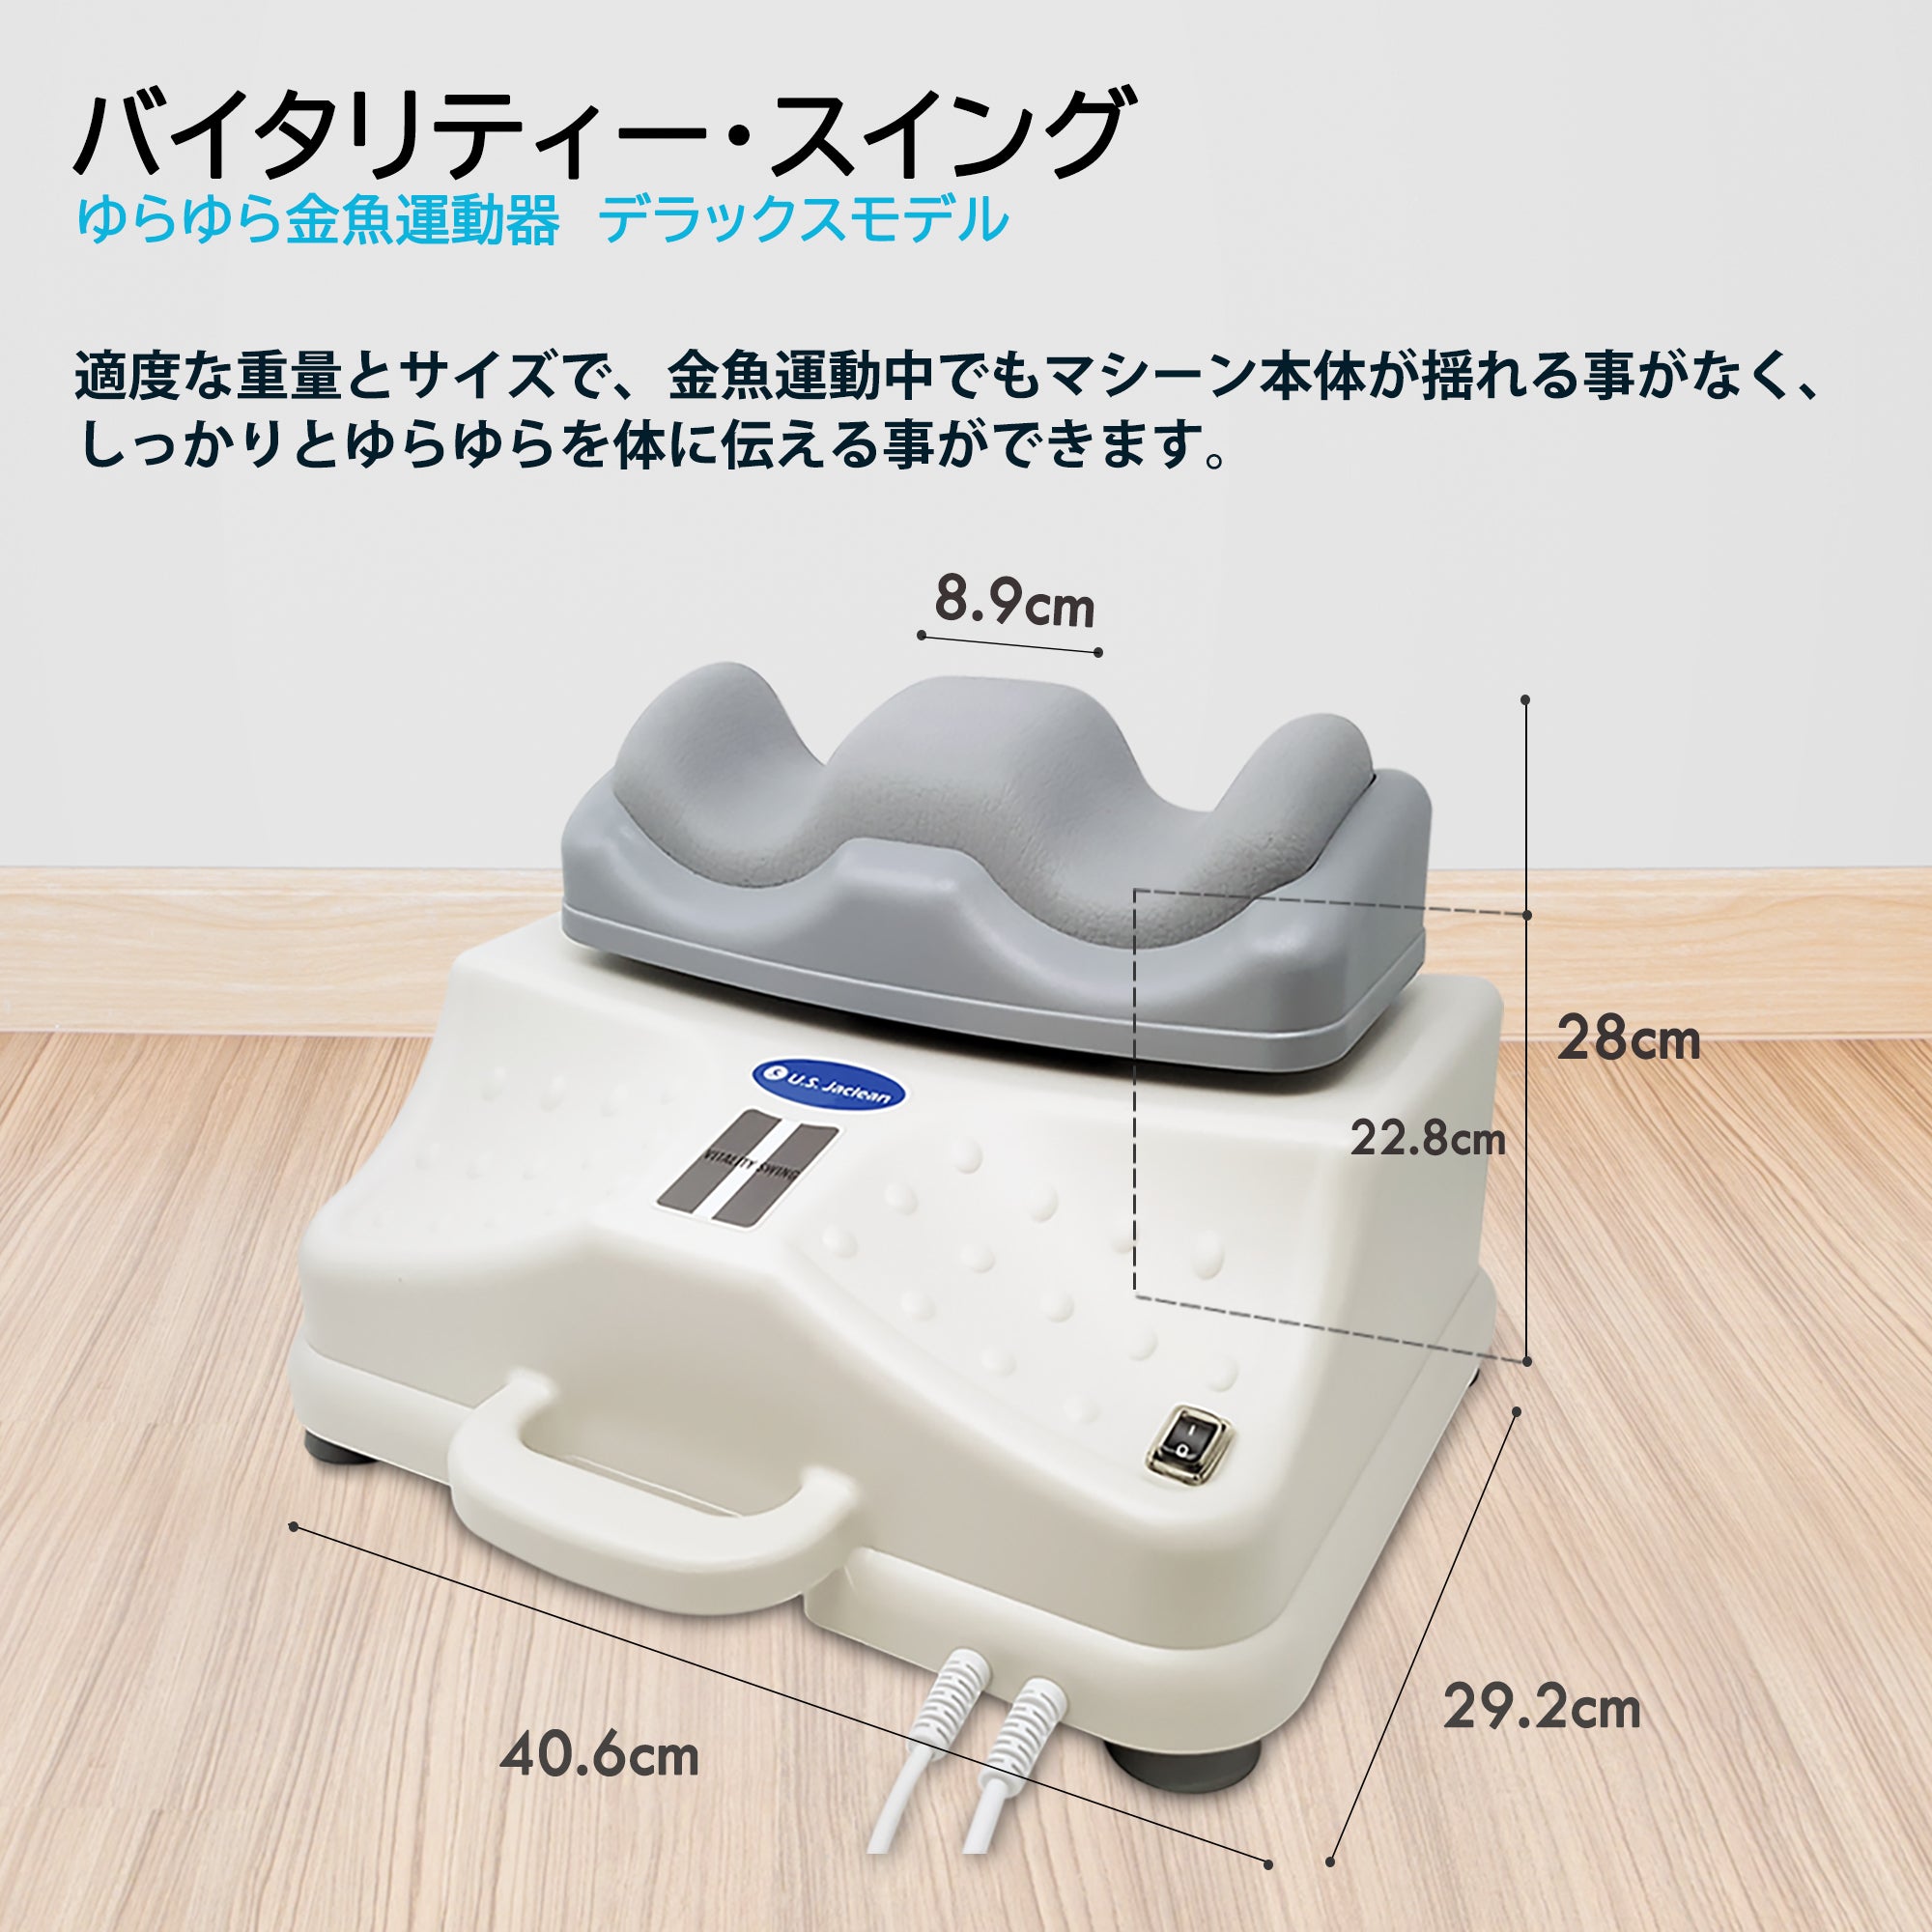 全身金魚運動マシン(vitality-swing)アマゾン購入価格43800円